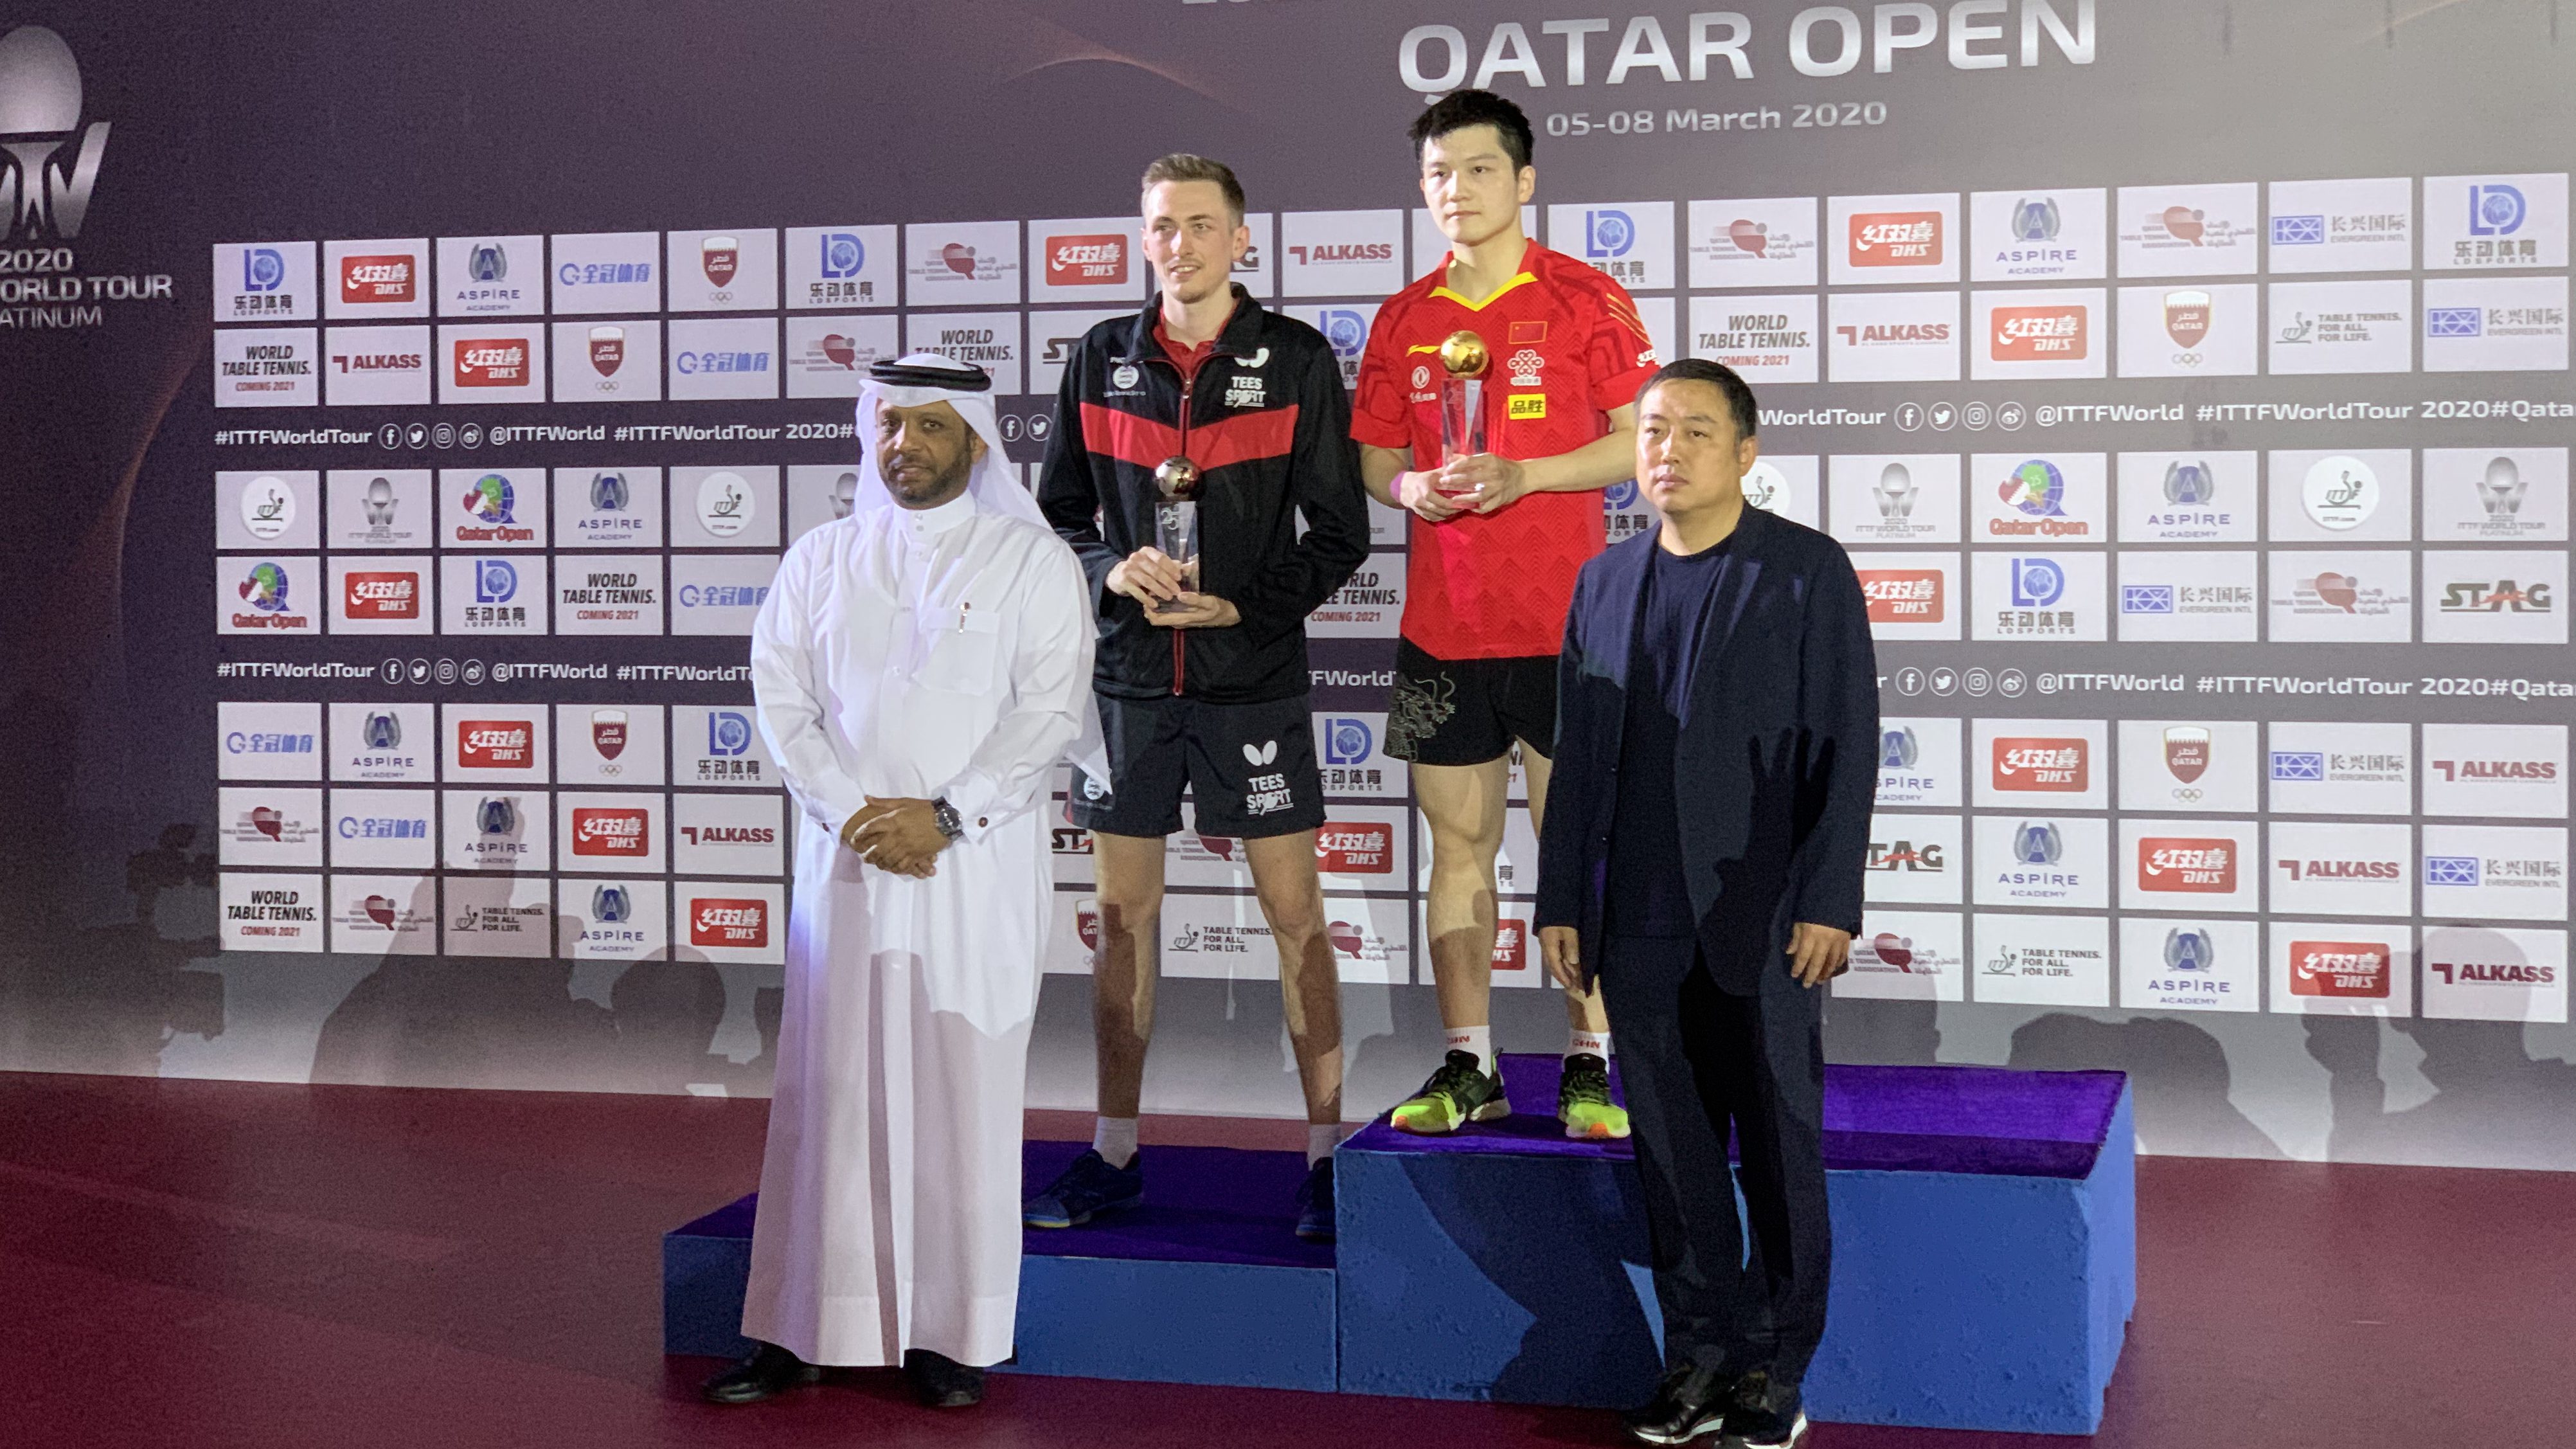 ITTF Qatar Open Winners donate prize money to efforts for coronavirus